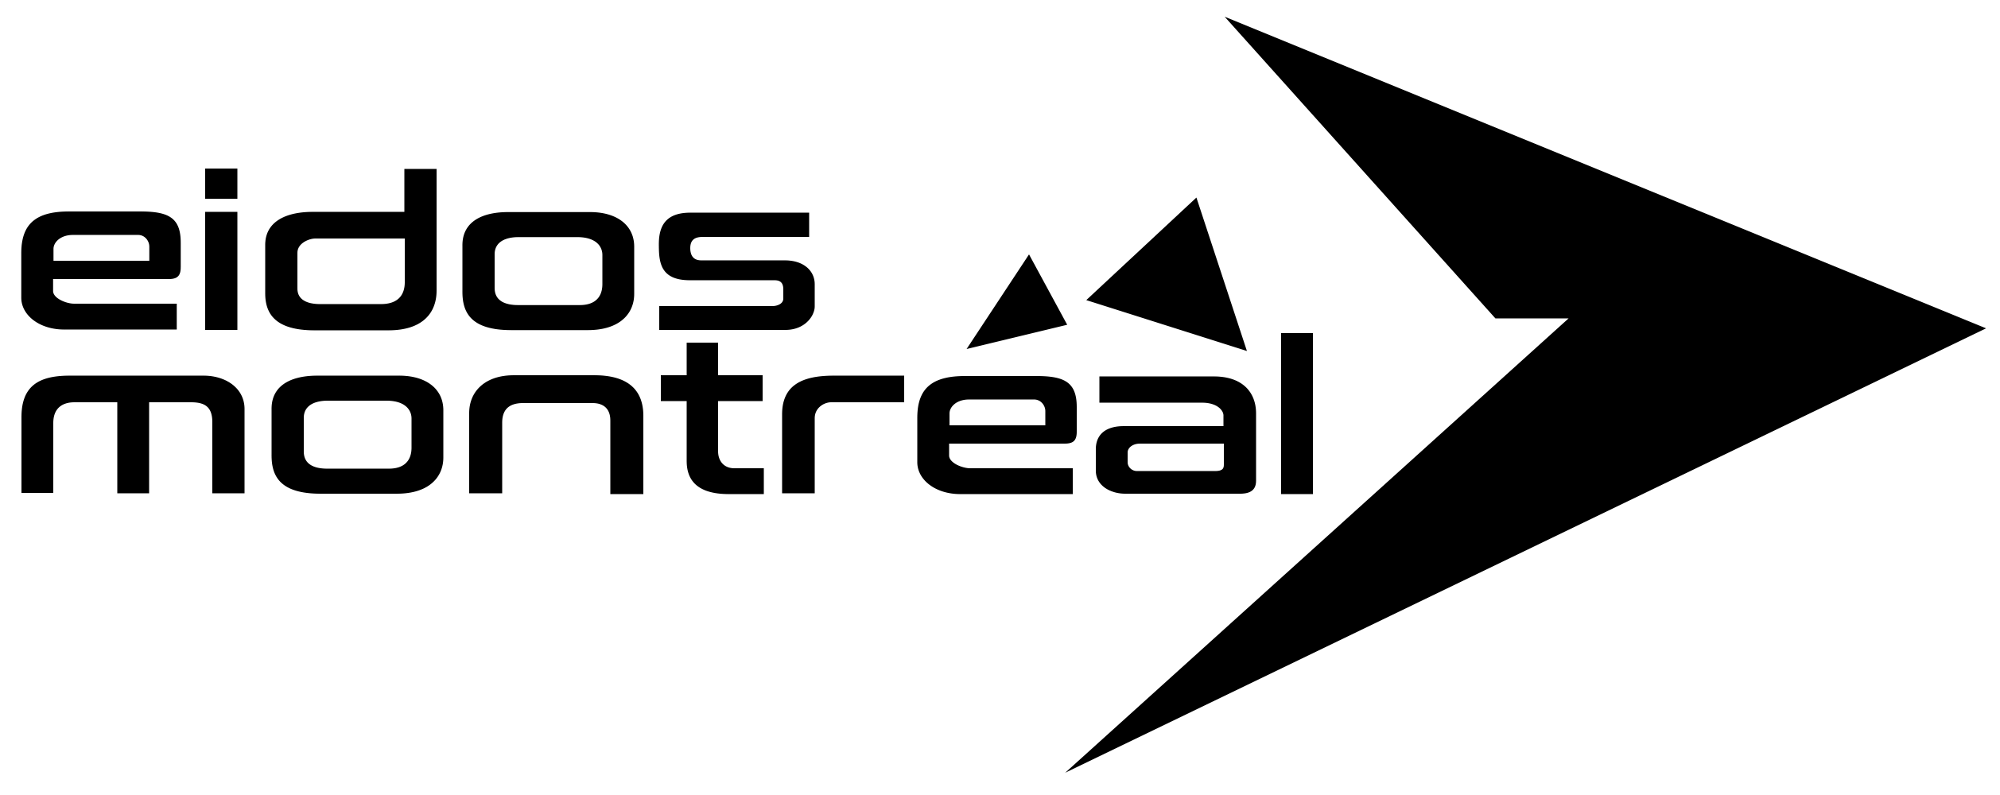 Eidos_Montréal_2017_logo